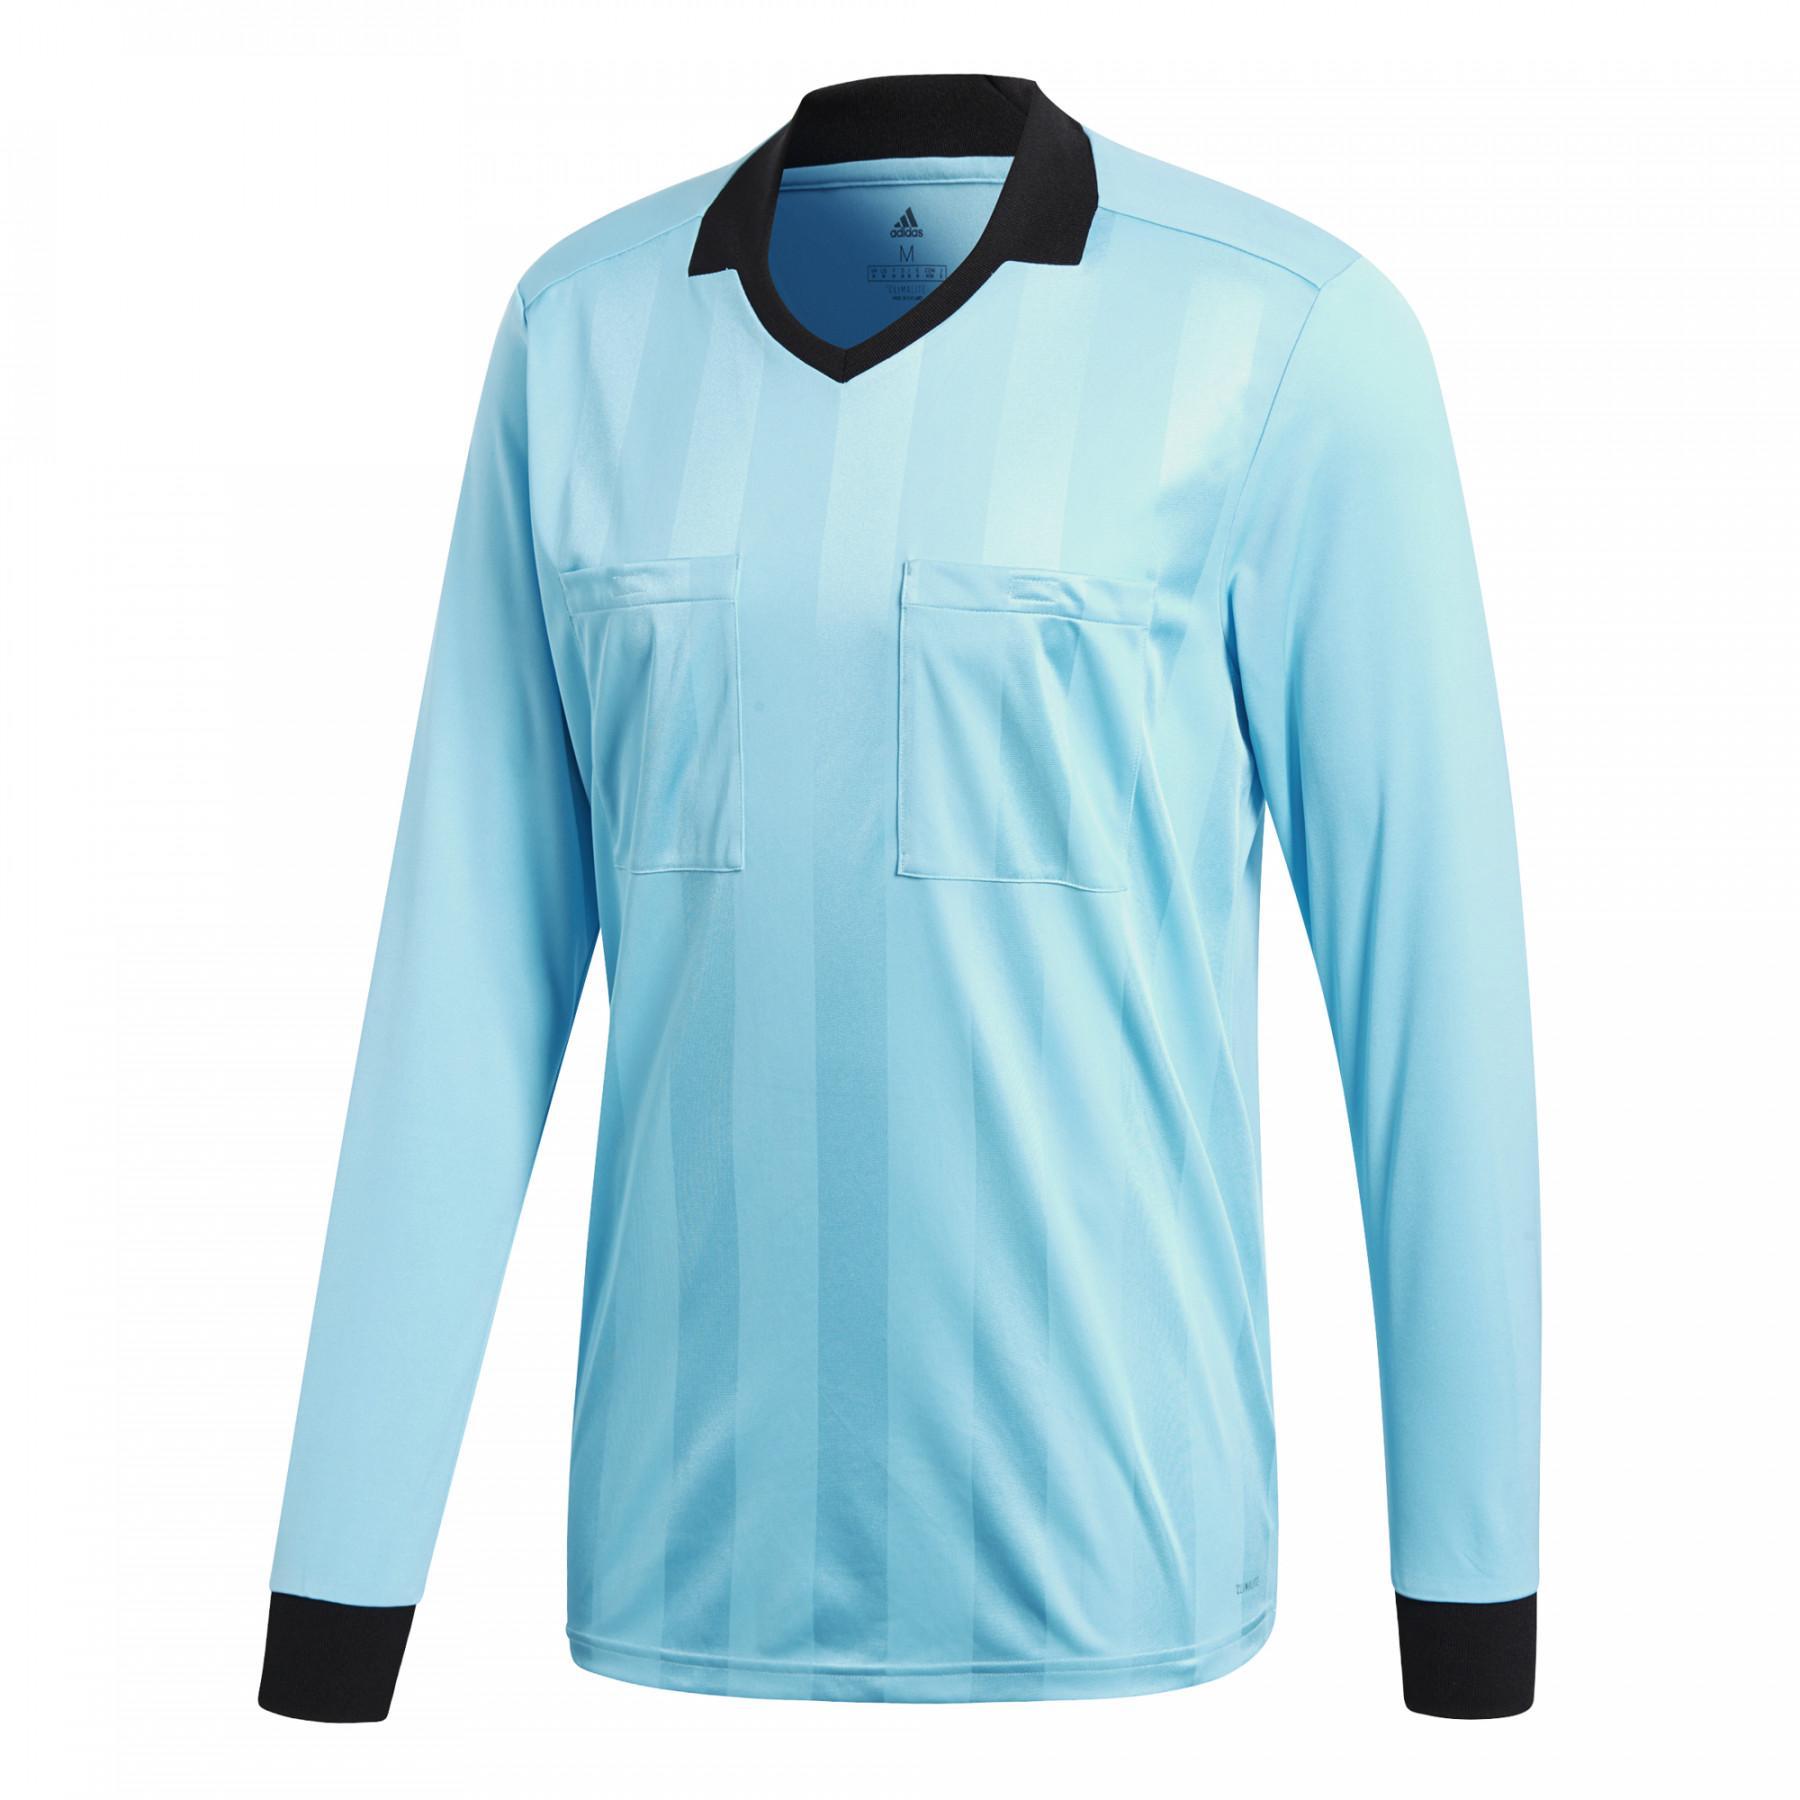 Camiseta de de manga Referee 18 - adidas Camisetas de entrenamiento - Ropa de fútbol